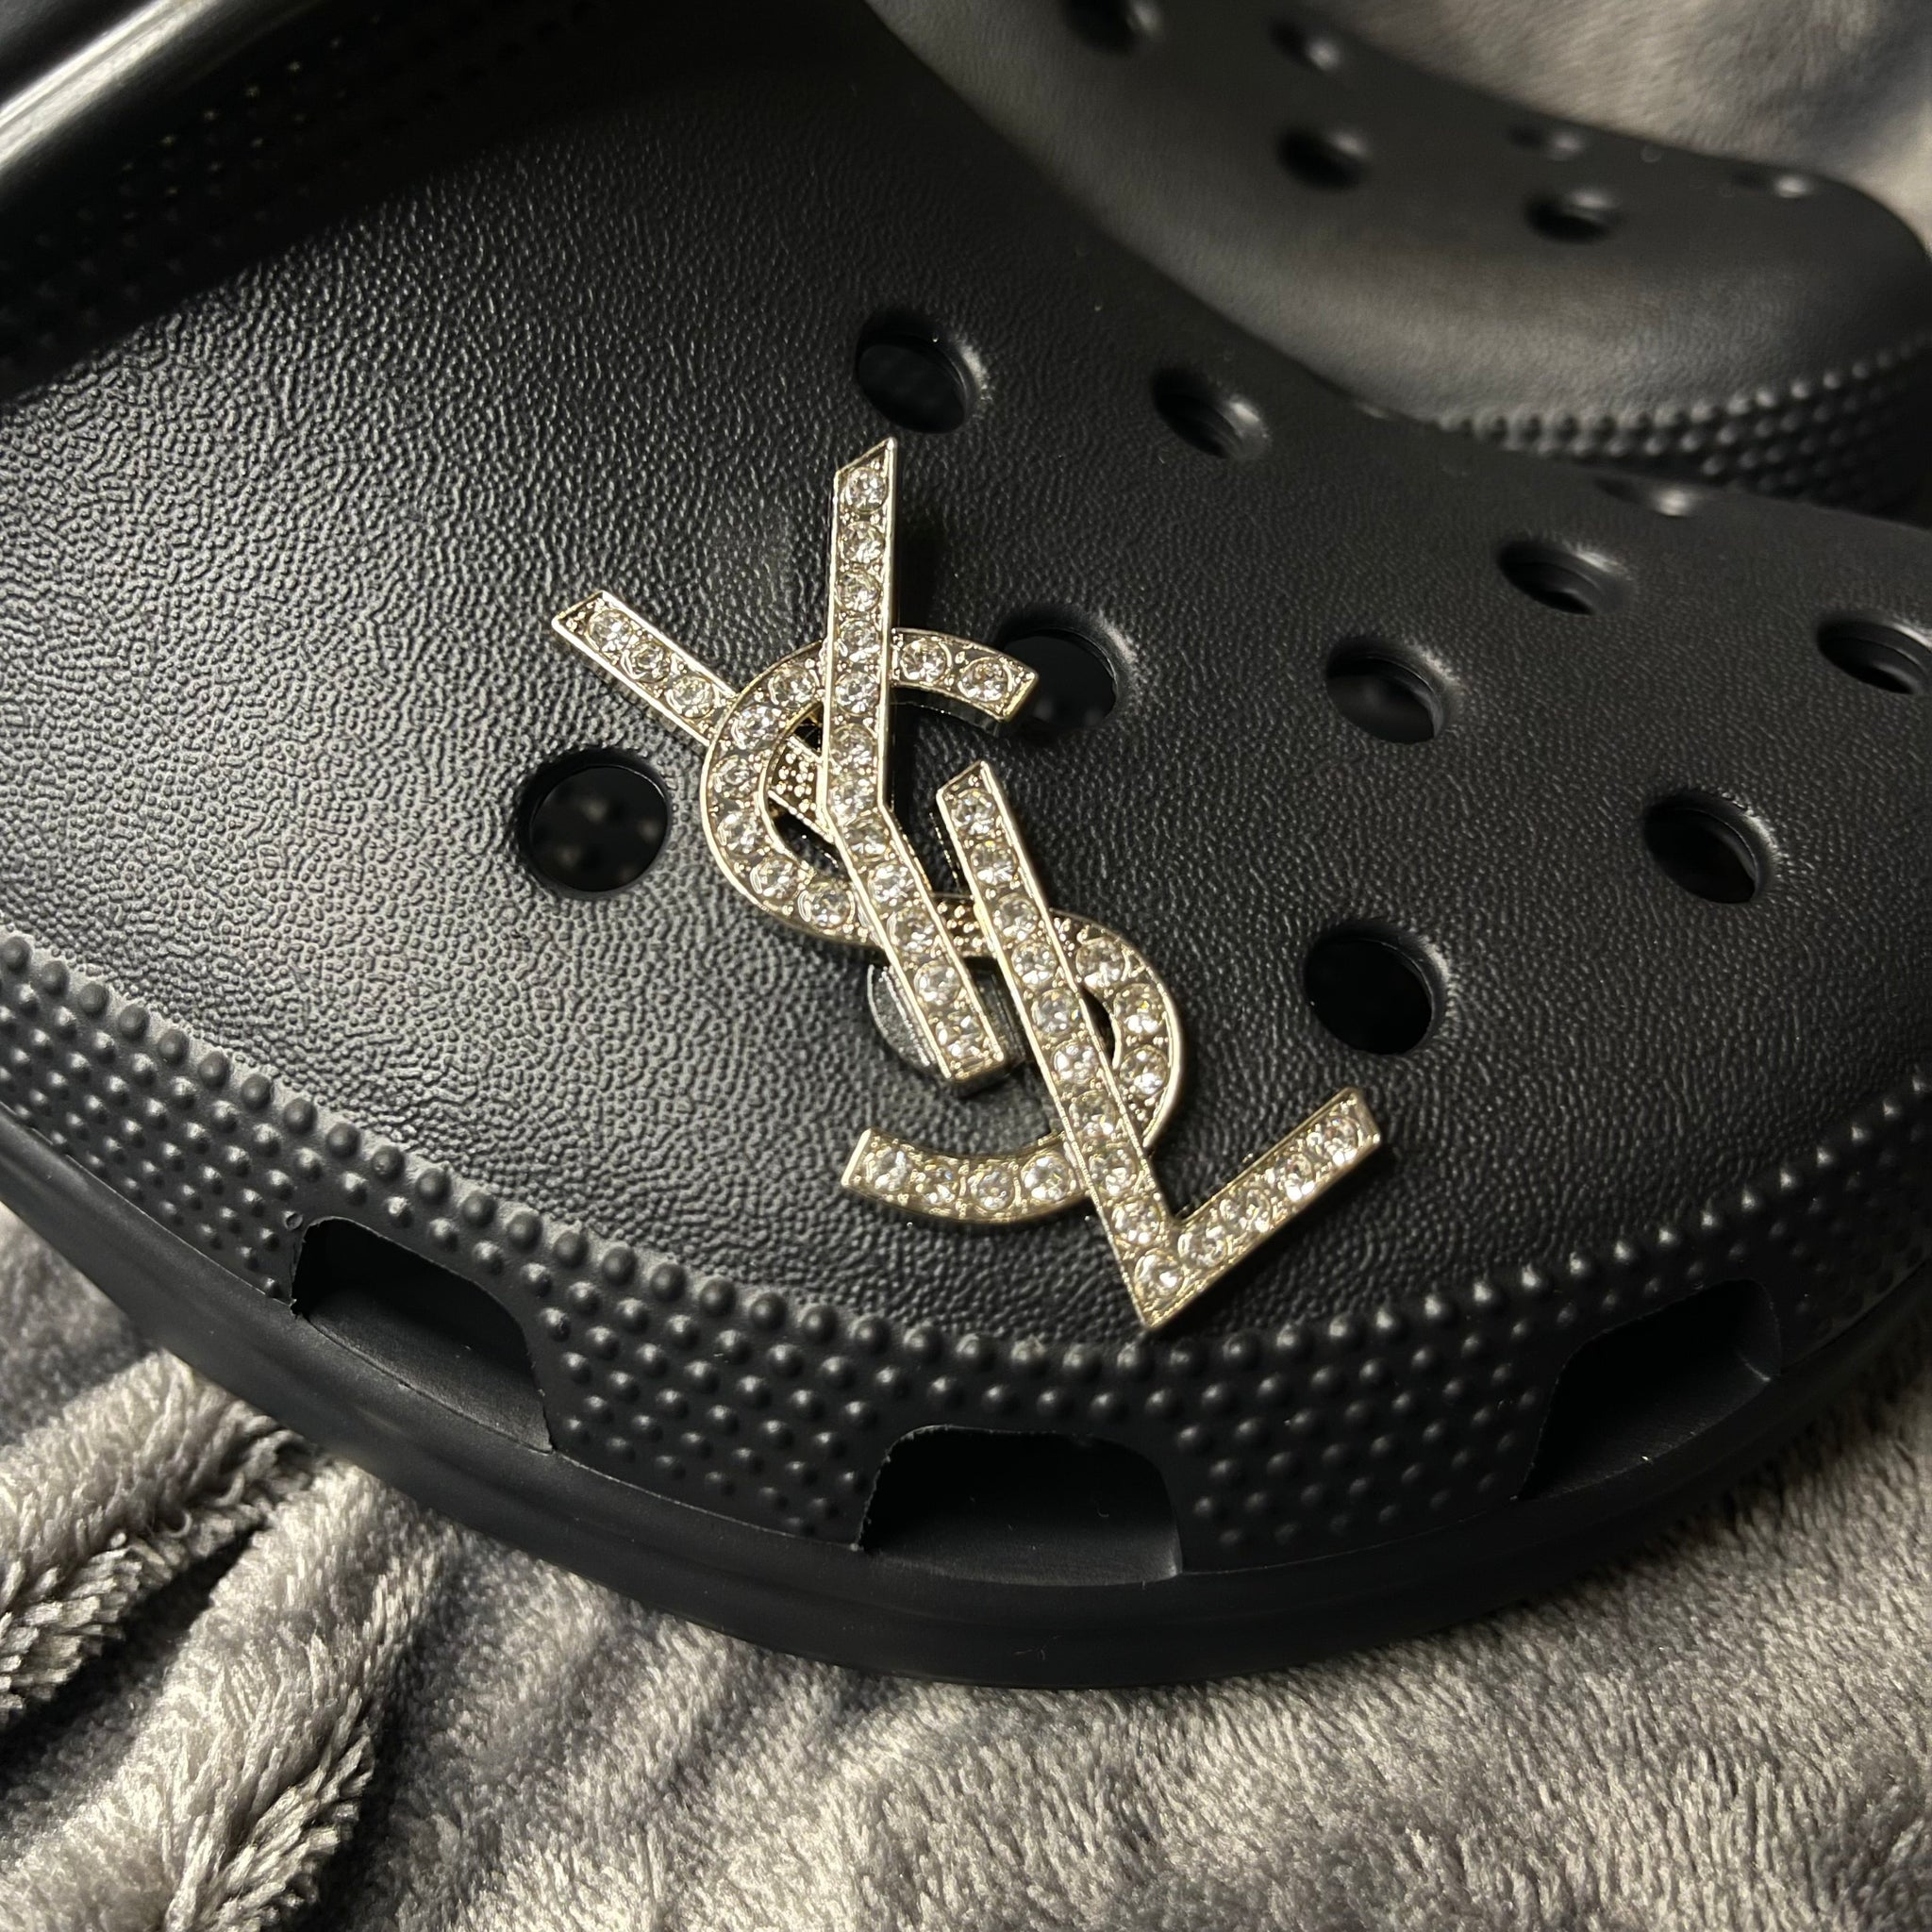 Louis Vuitton Charm Croc 